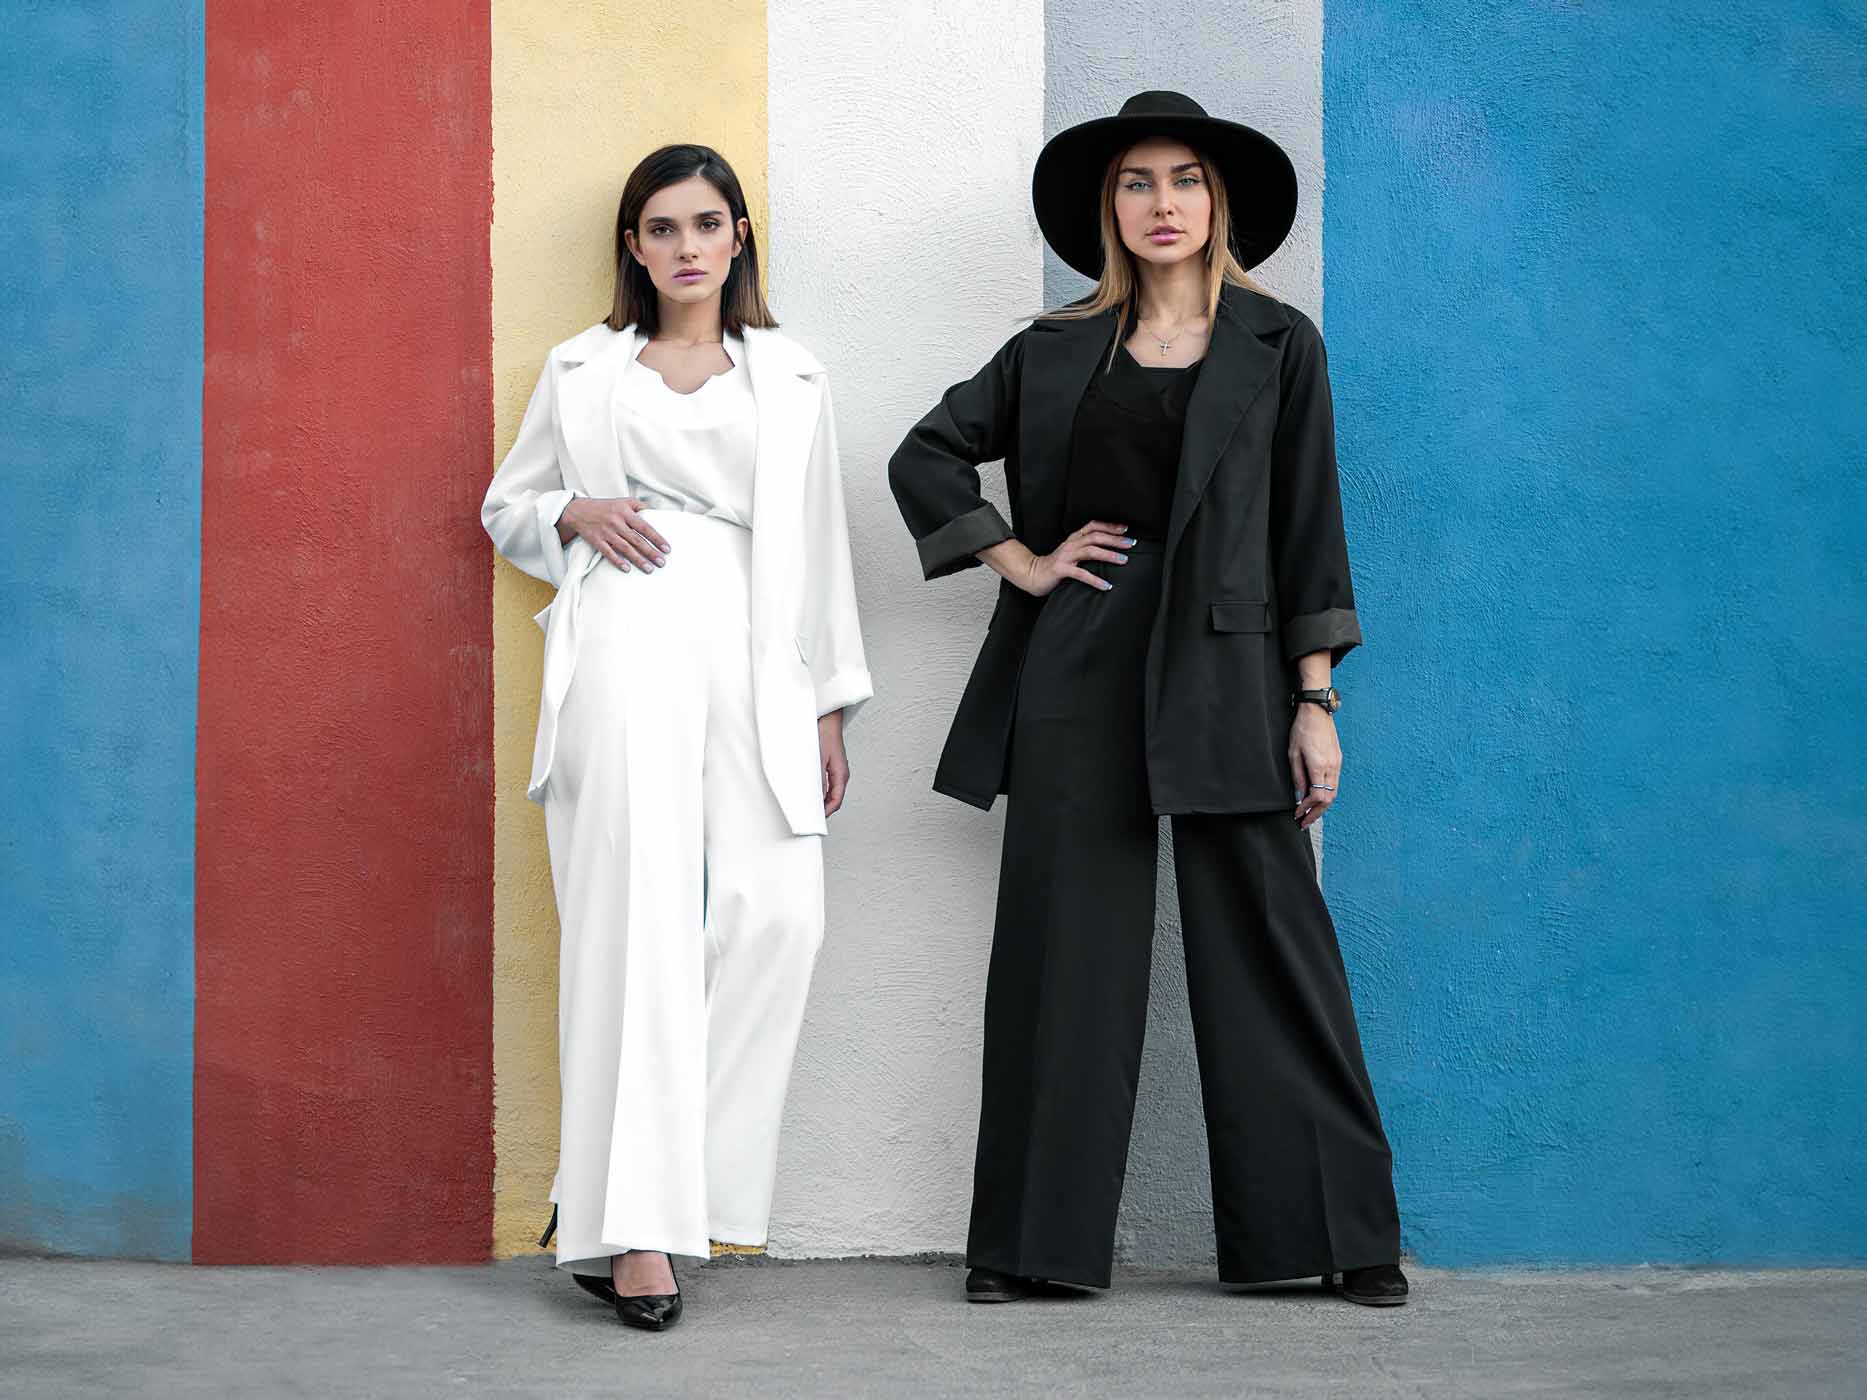 Eine Frau in einem komplett weißen Outfit und eine Frau in einem komplett schwarzen Outfit stehen vor einer Wand